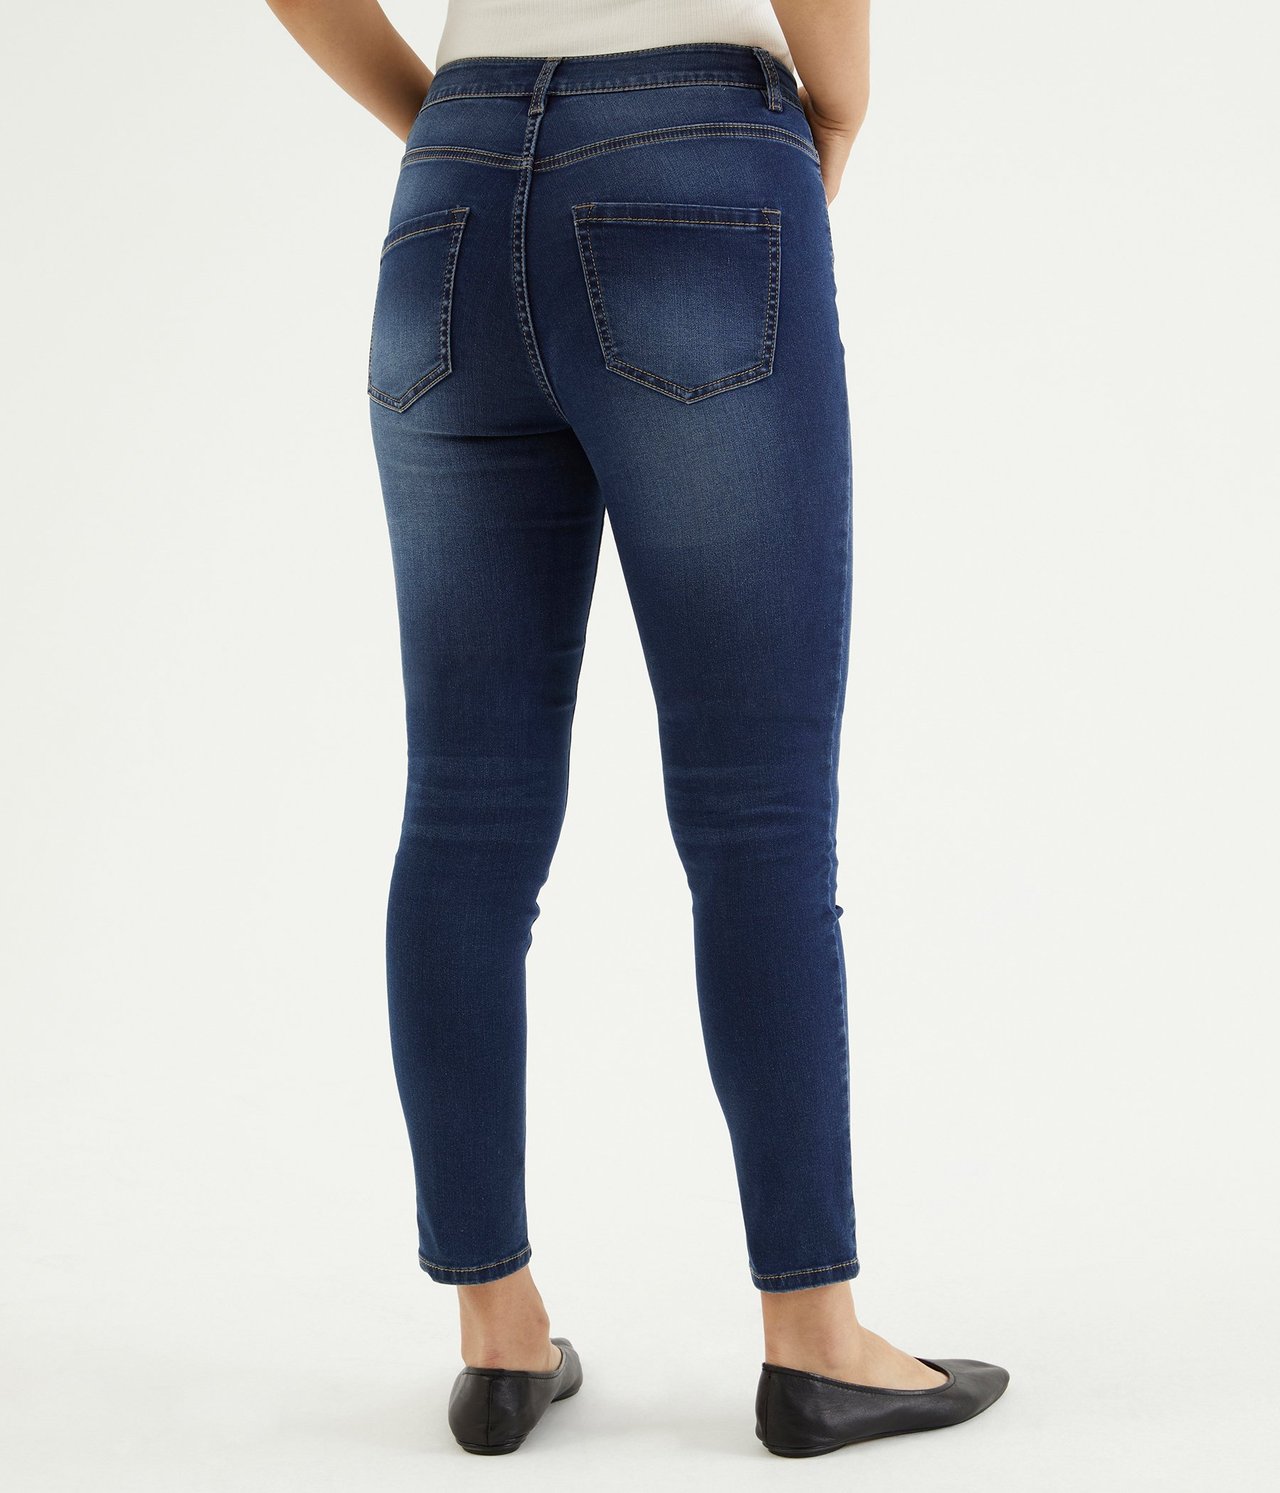 Super slim jeans short leg Mørk denim - null - 0